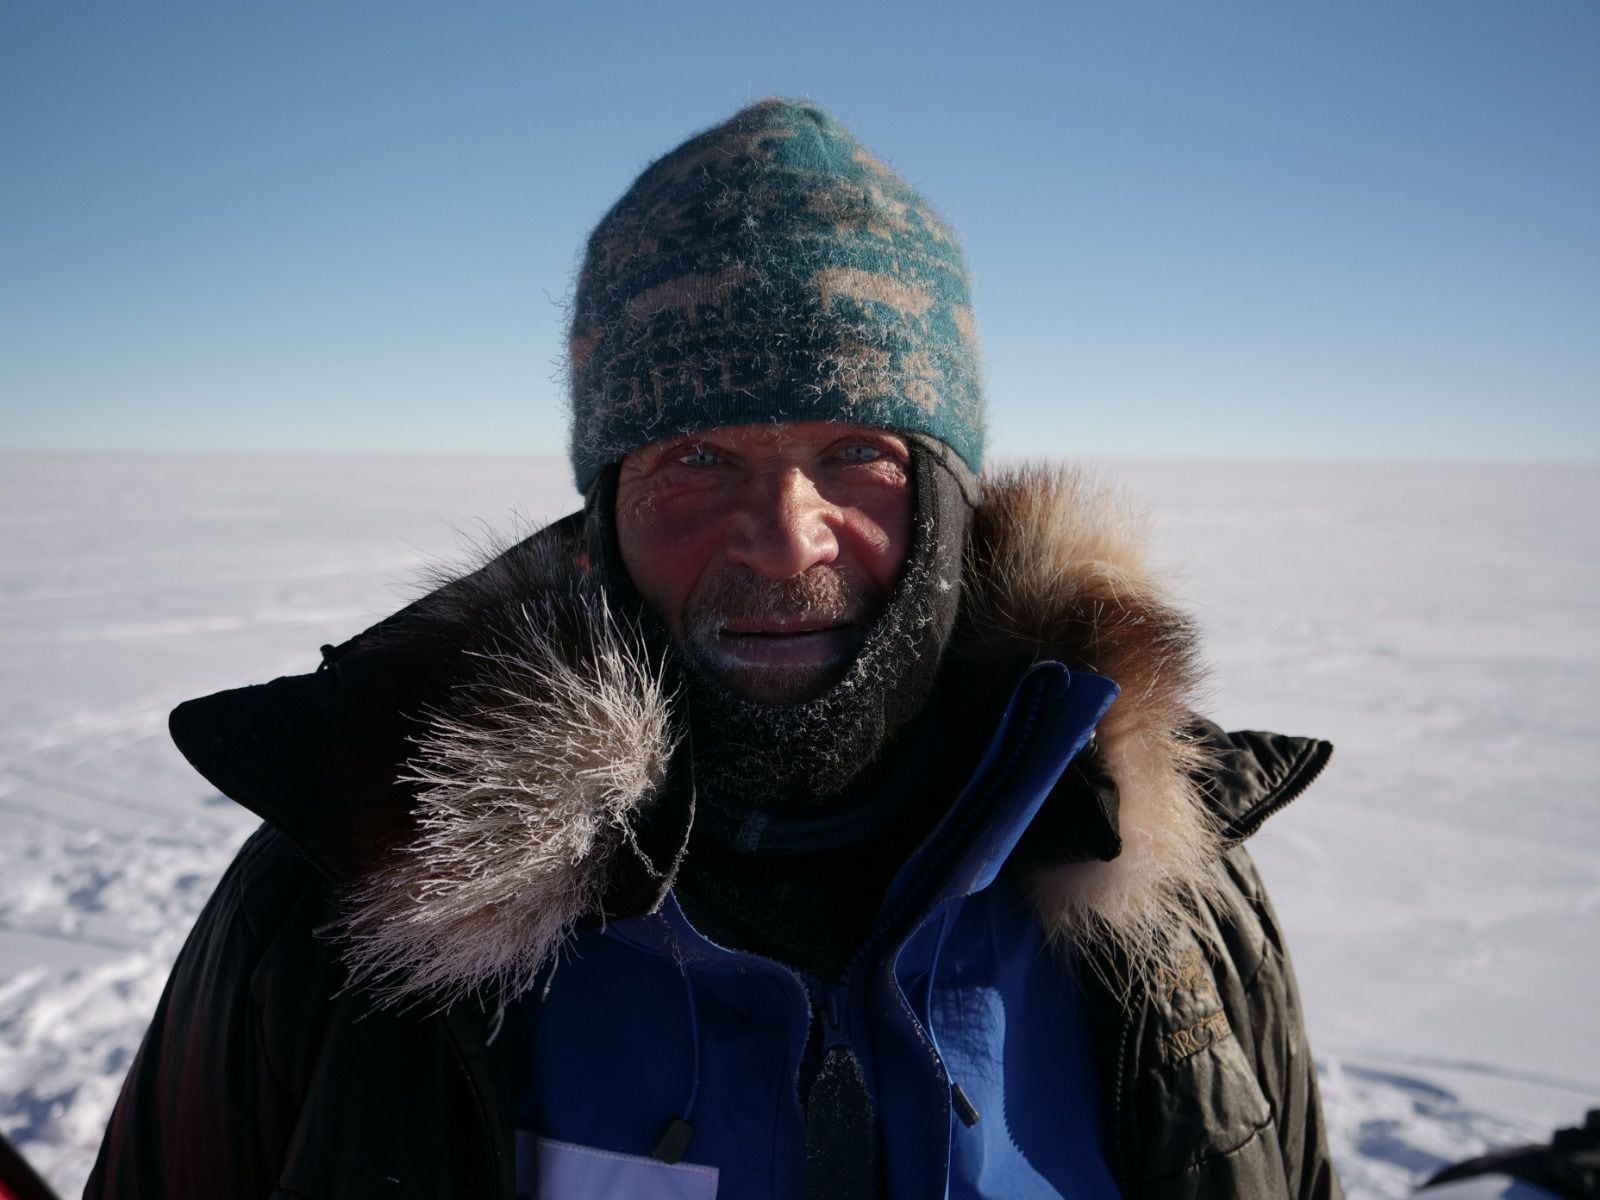 robert swan, referente internacional en el combate contra el cambio climático, se irá a vivir a la antártica